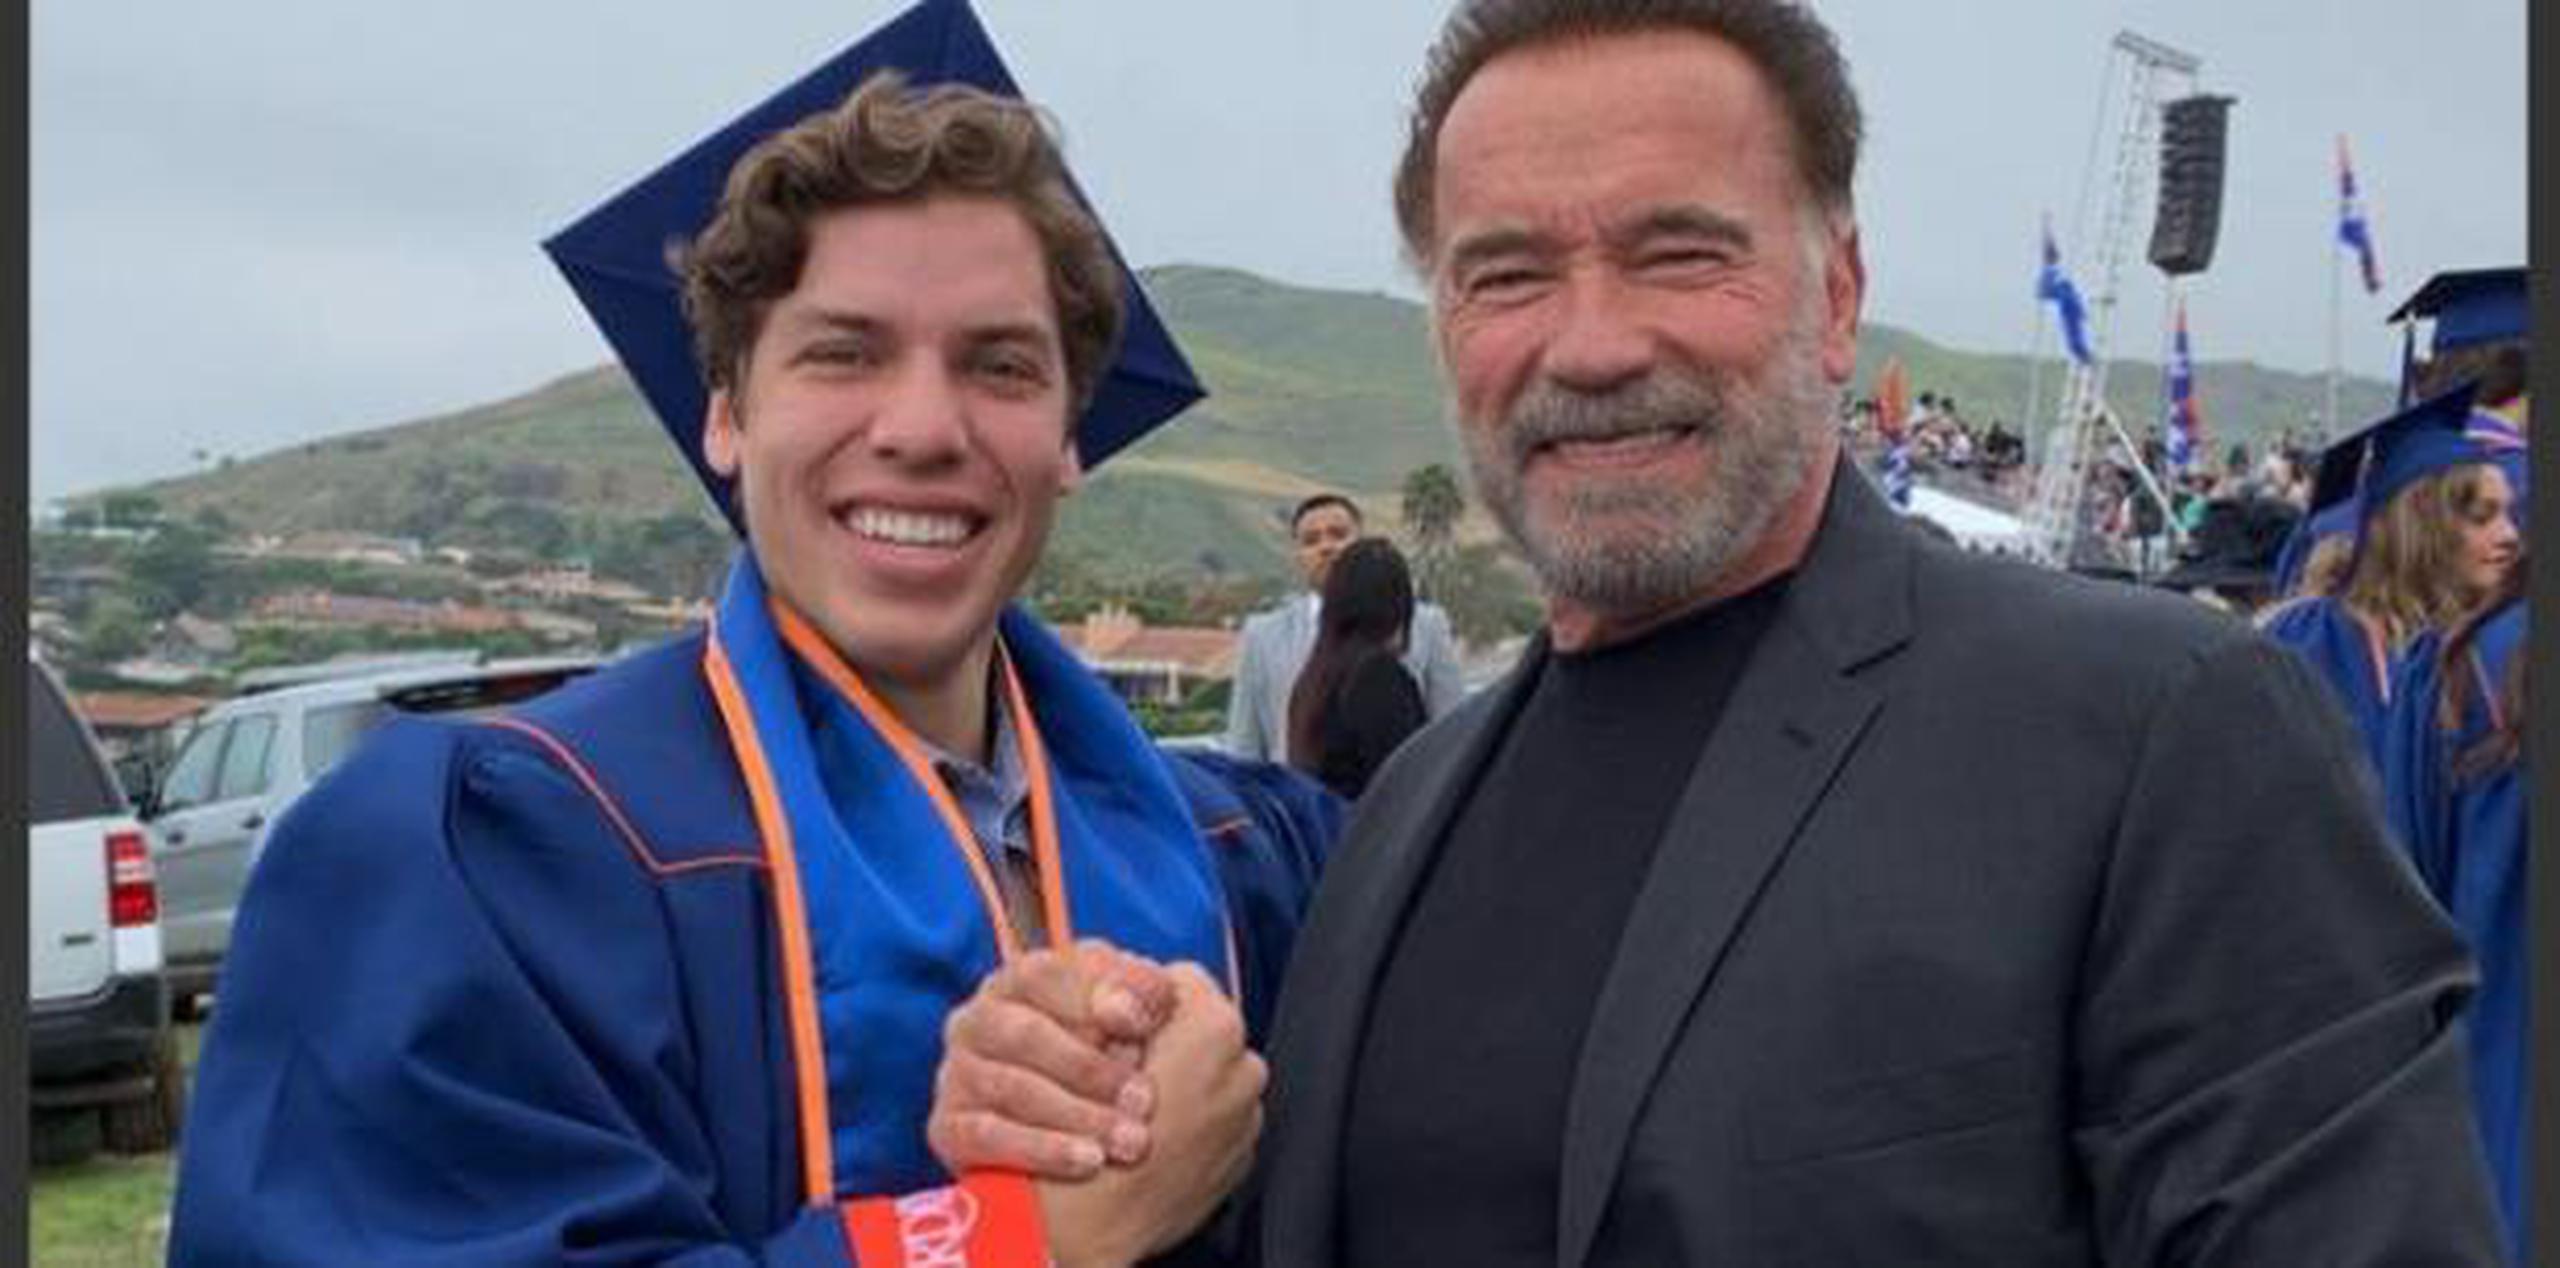 La primera vez que Schwarzenegger  presumió de él fue en el 2016 para conmemorar el 19° cumpleaños de su quinto hijo y desde entonces cada año sube una foto con él para celebrar su nacimiento. (Instagram)